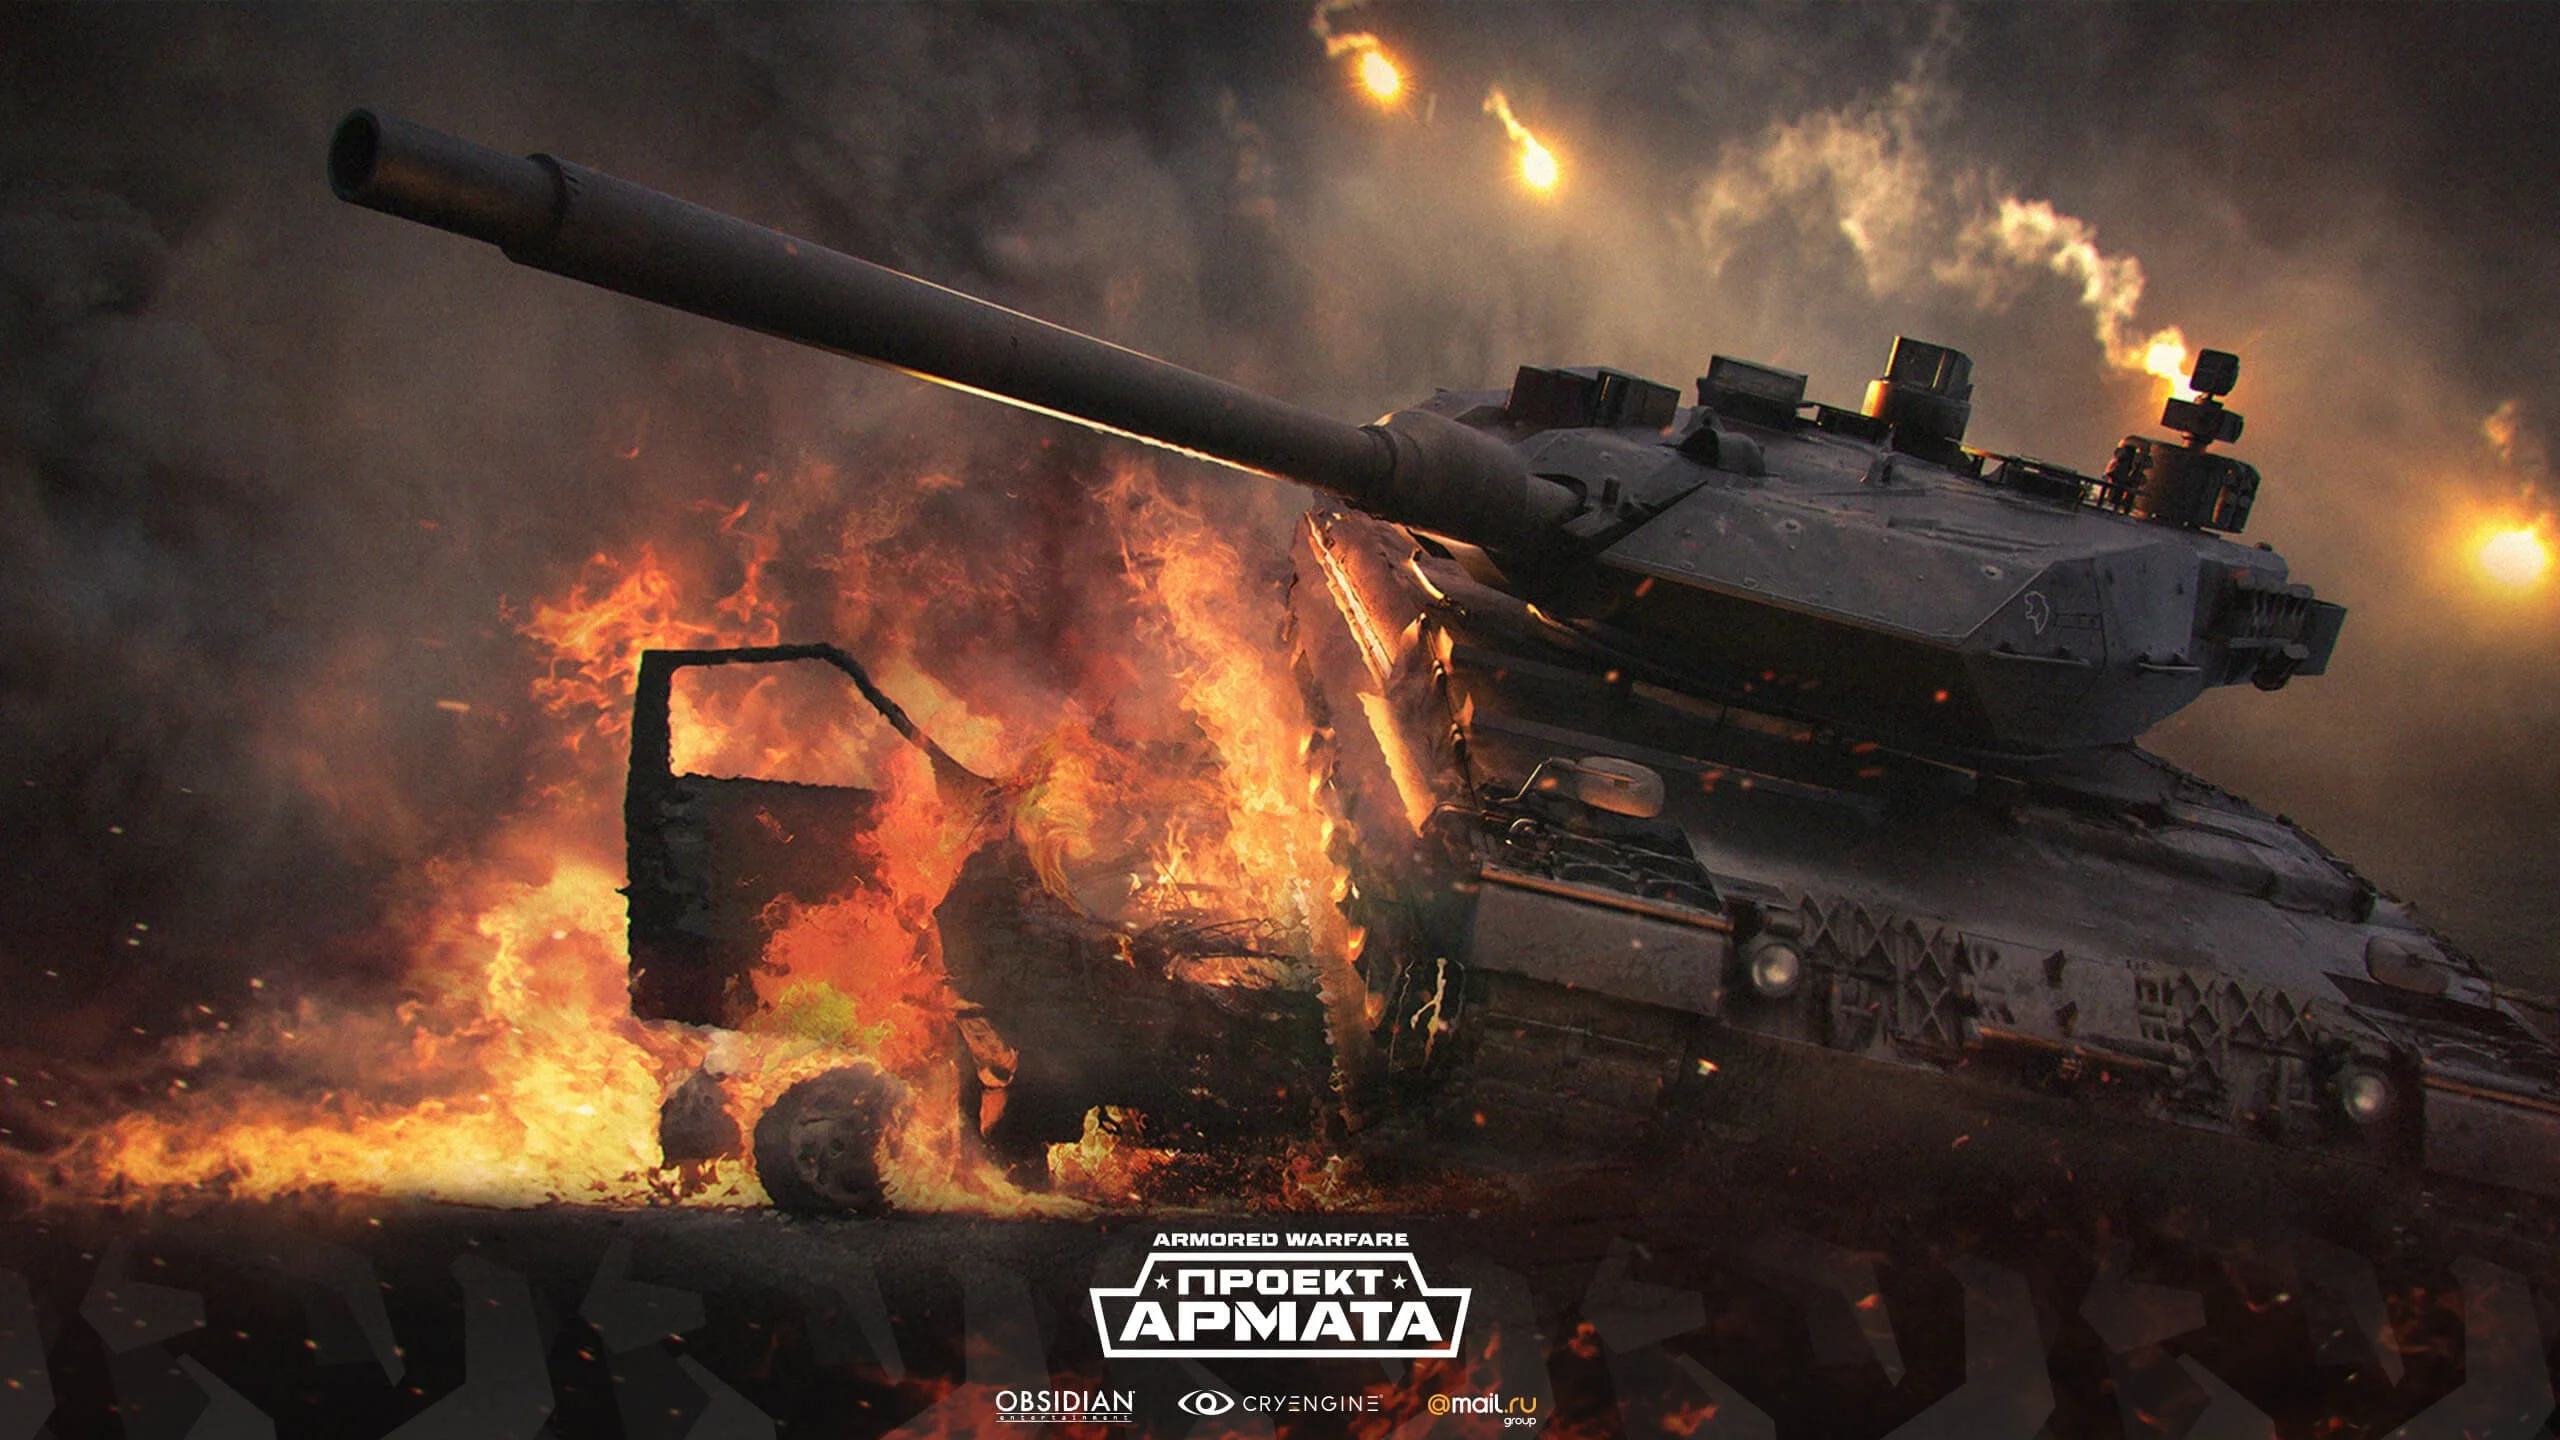 В начале этого года Armored Warfare: Проект Армата стала одной из самых обсуждаемых игр среди поклонников сессионных танков. Противостояние со знаменитым конкурентом заставило разработчиков активно работать над проектом, а игровое комьюнити – обсуждать каждое новое событие. С наступлением лета накал страстей немного утих, а «танкисты» переключились на сезонные развлечения – отдых на свежем воздухе и отпуска. Для тех, кто переключился с онлайн-событий на реальность, мы приготовили небольшой ликбез по последним событиями в игре. Давайте посмотрим, что готовит для своих поклонников «Проект Армата», а что можно посмотреть в игре уже сейчас.